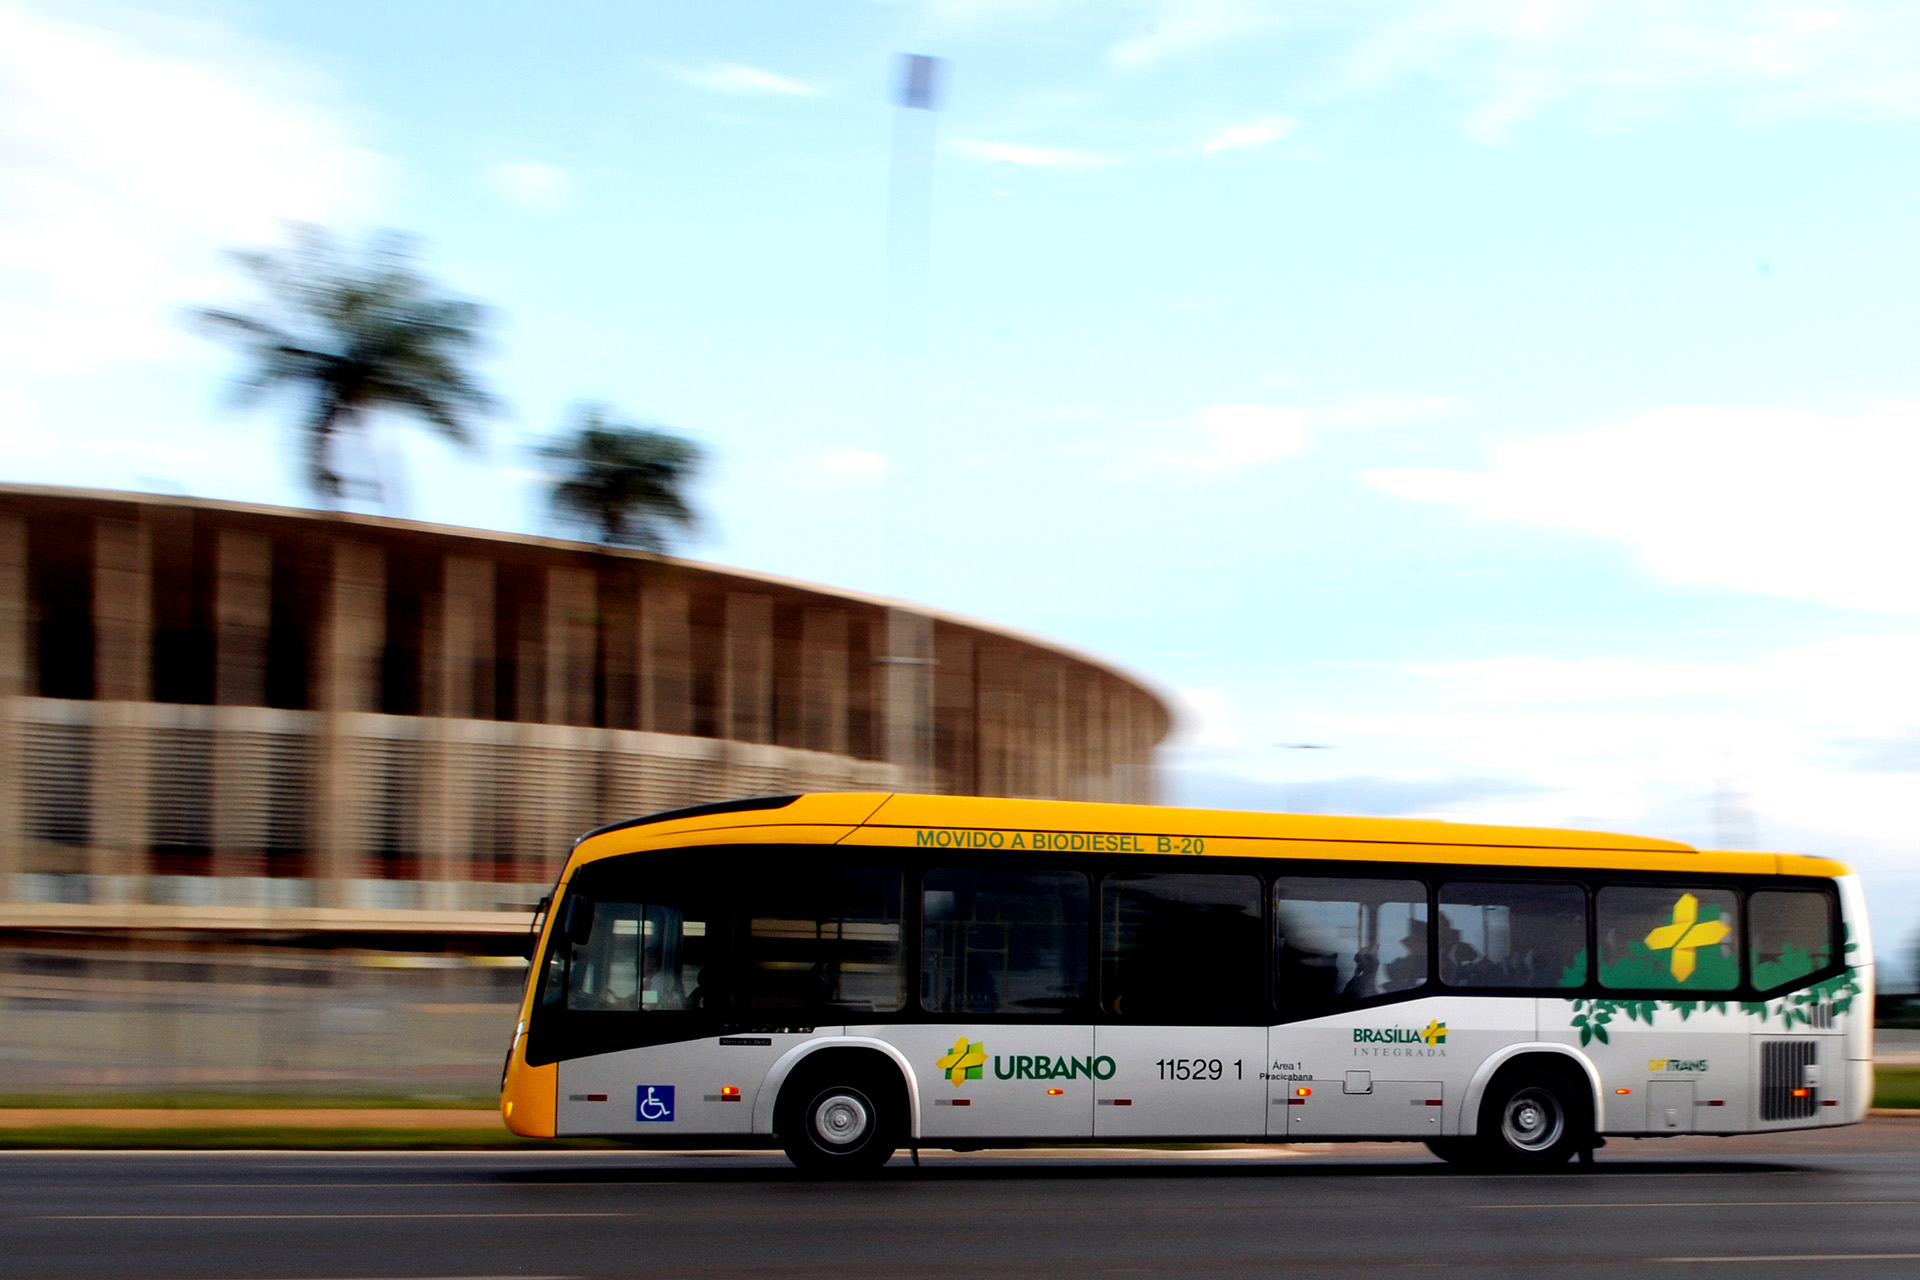 Ônibus que fará o trajeto Trajeto Memorial JK — Praça dos Três Poderes passando em frente ao Mané Garrincha